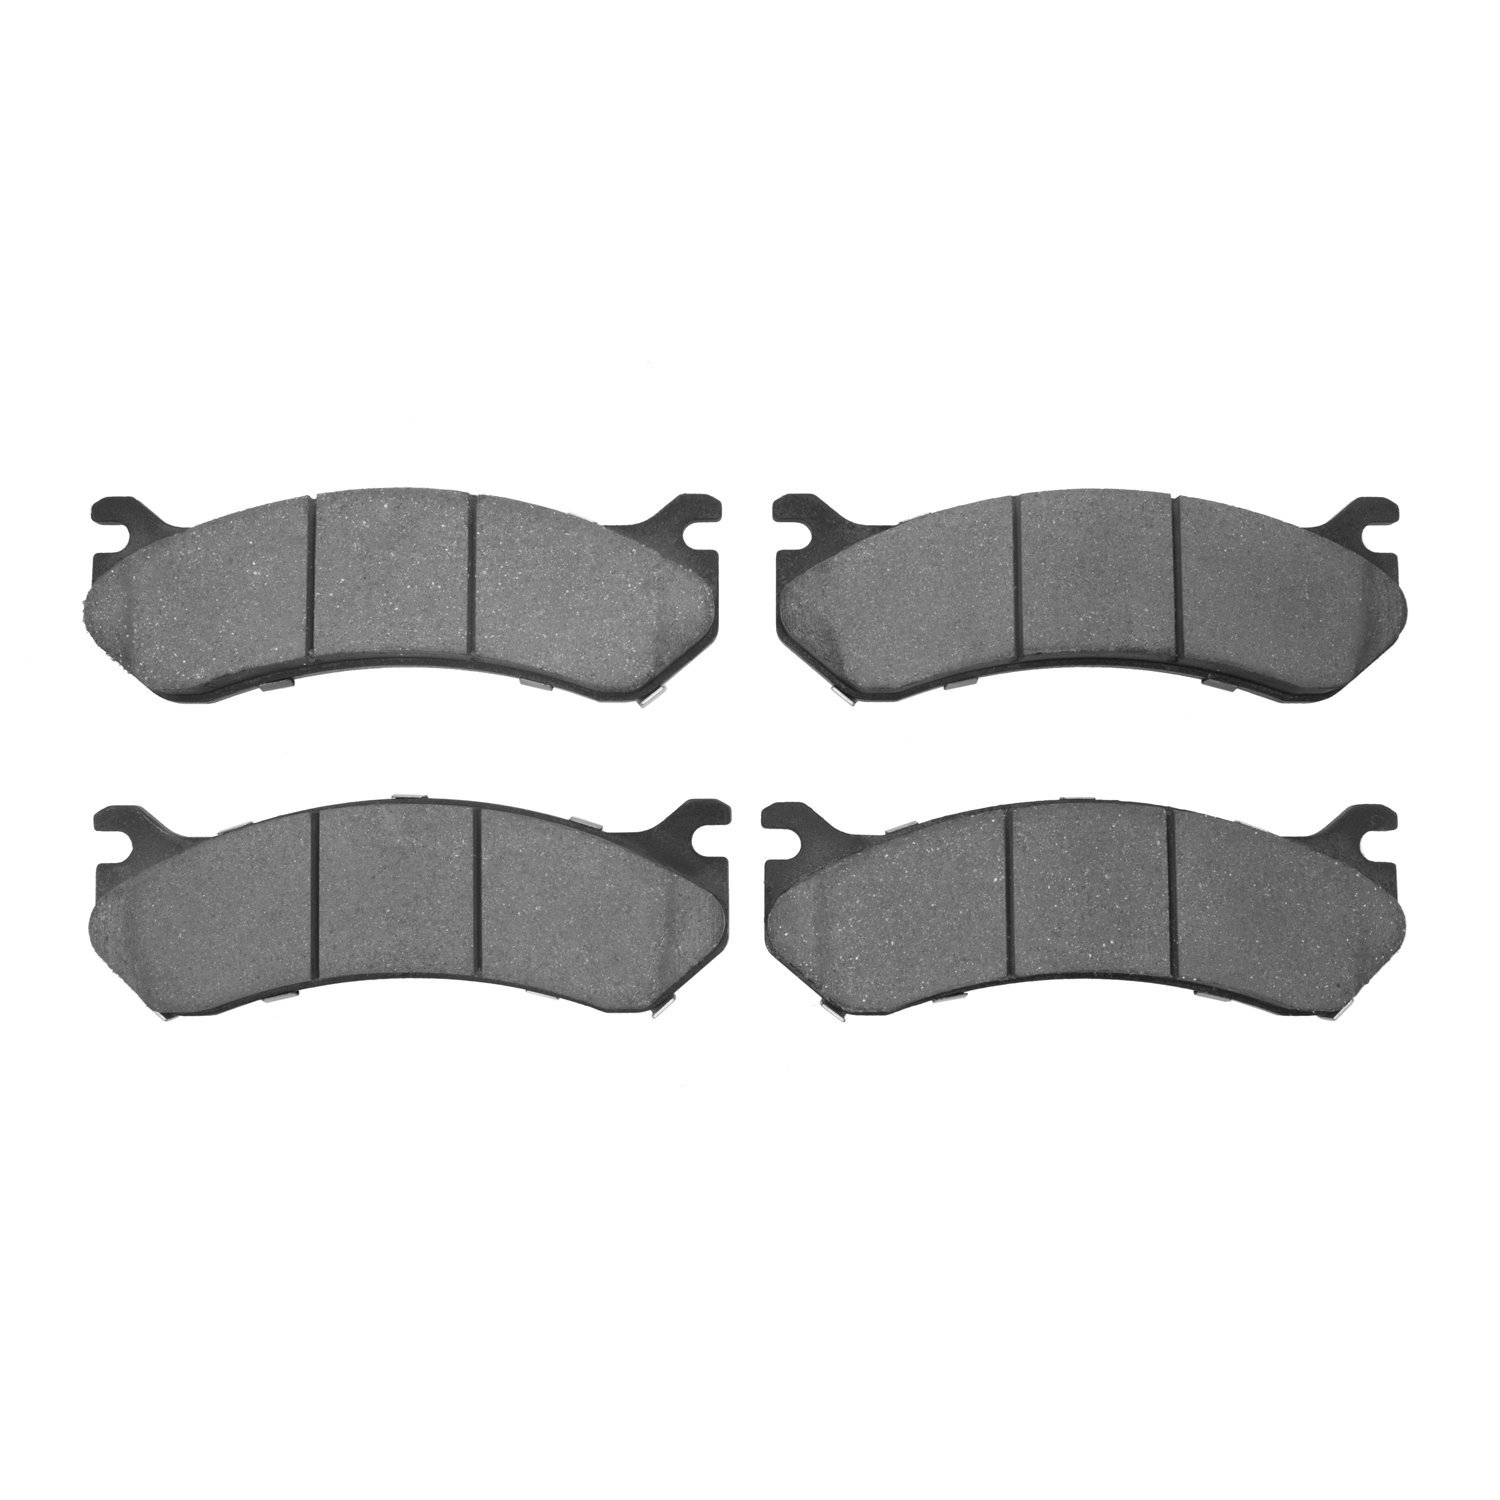 1214-0785-00 Heavy-Duty Semi-Metallic Brake Pads, 1999-2013 GM, Position: Front,Rear